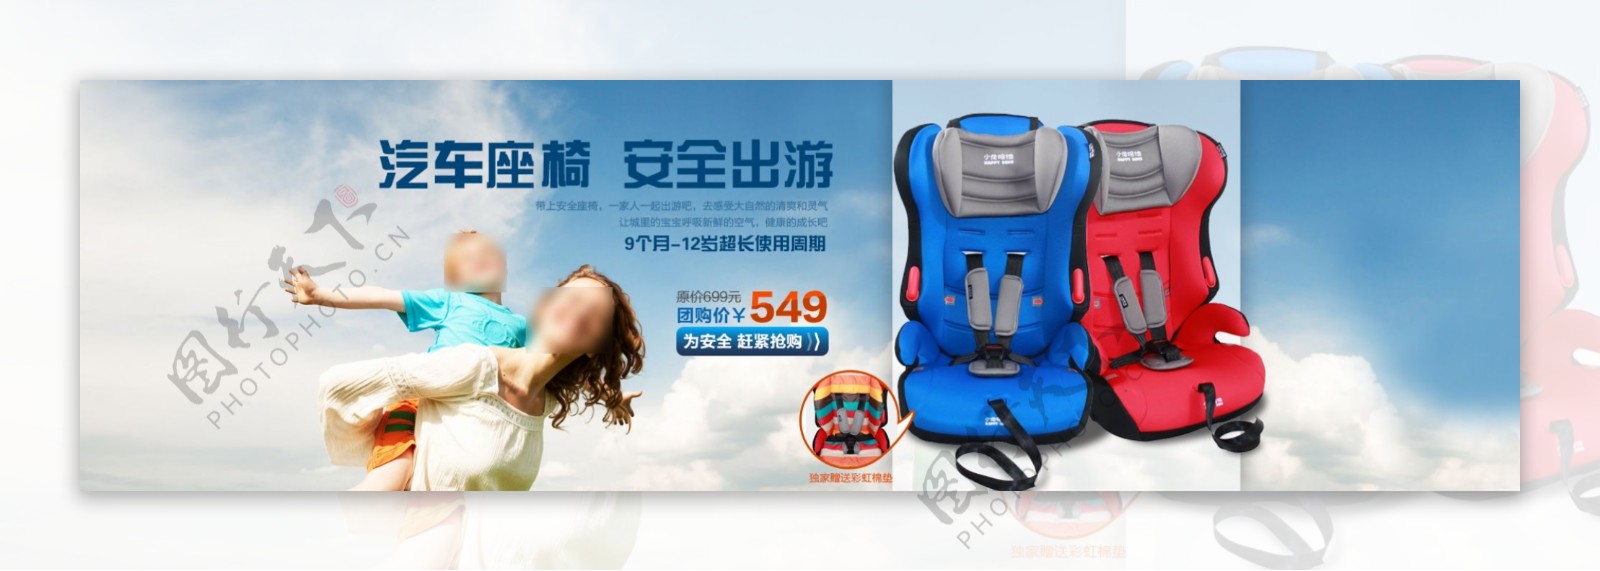 淘宝婴儿安全座椅促销海报PSD素材